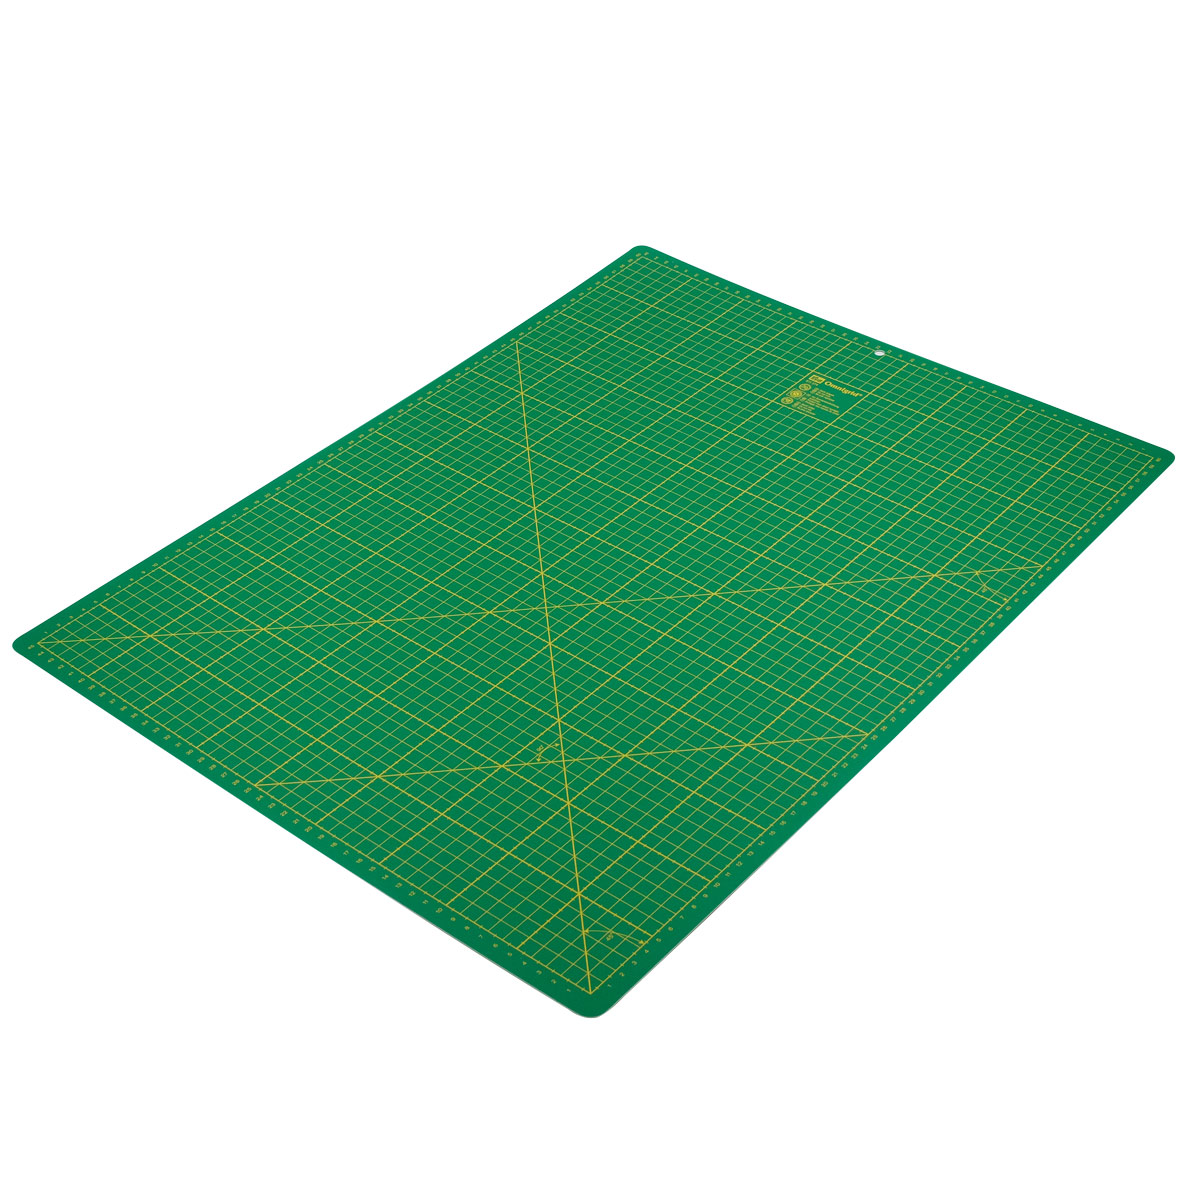 Коврик - подложка раскройный Prym для резки ткани бумаги самовосстанавливающийся с разметкой зеленый 60 см х 45 см 611374 - фото 3